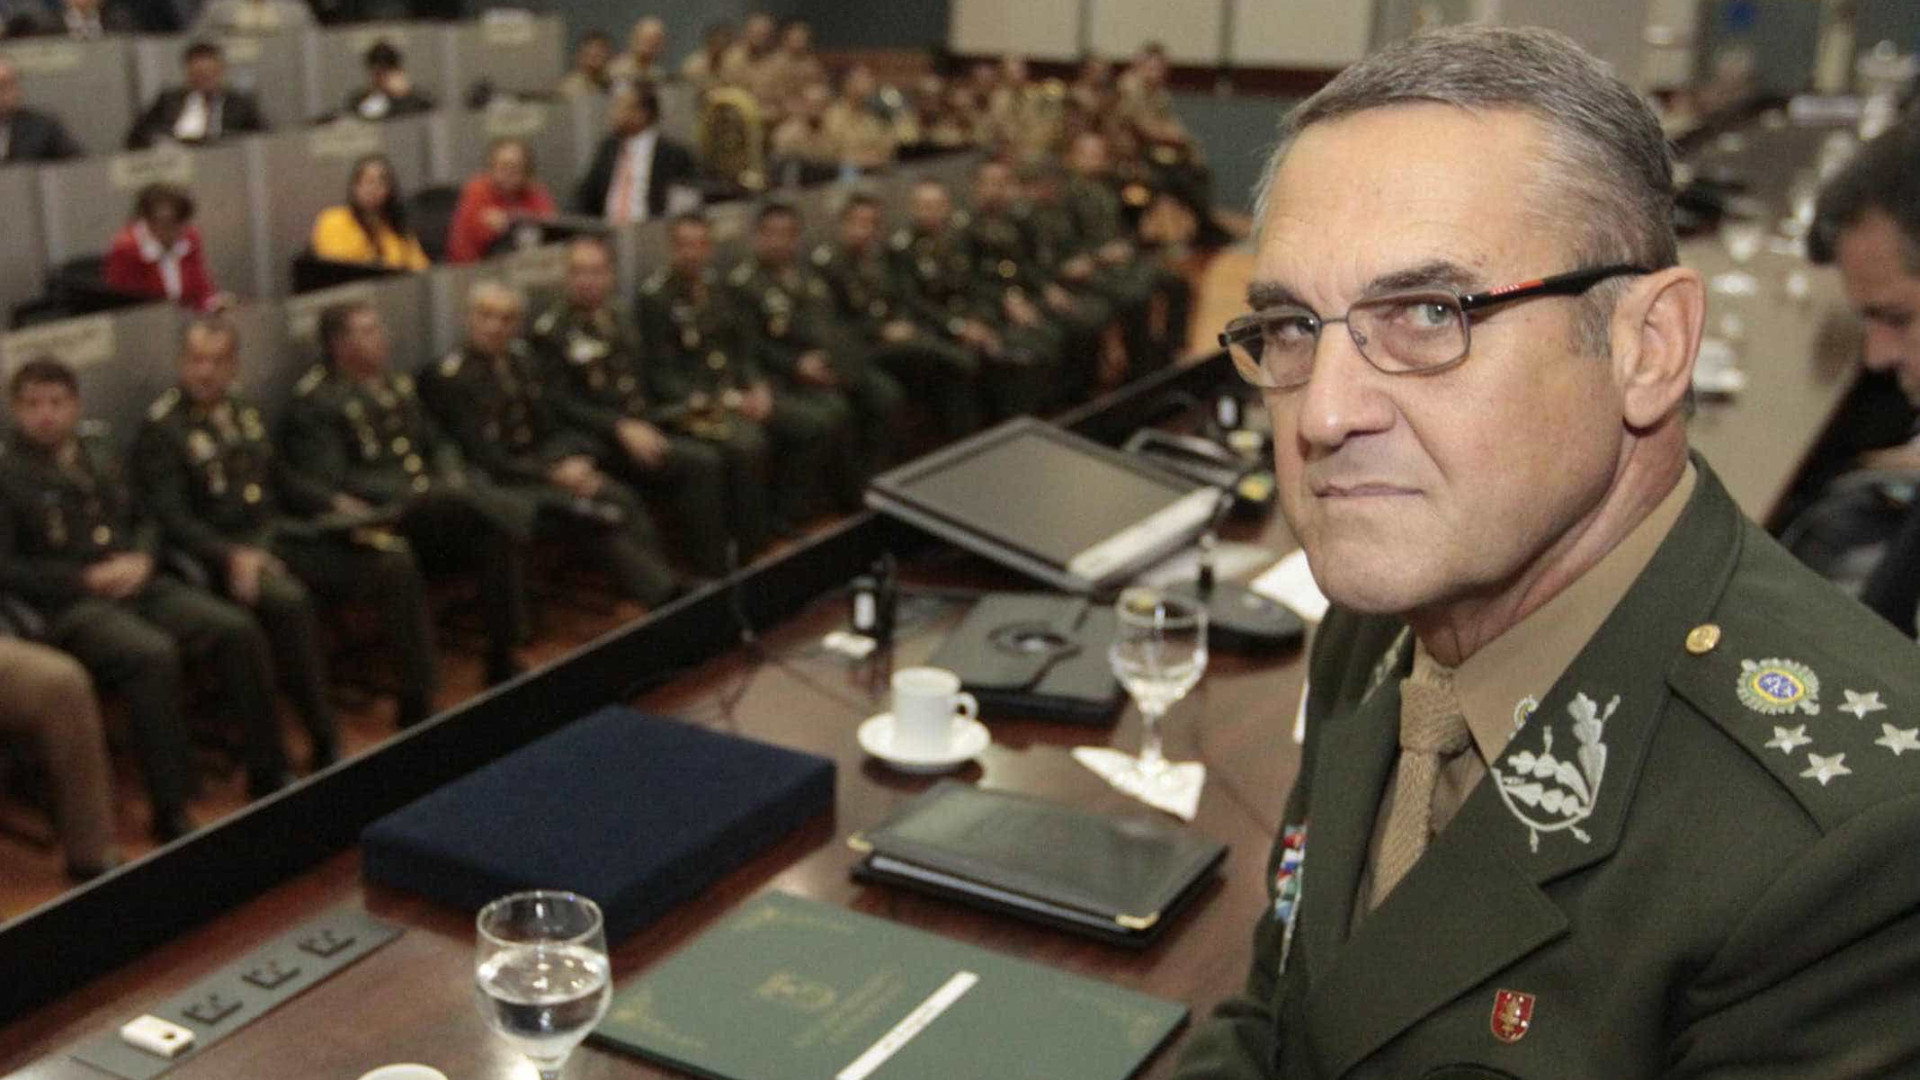 Comandante diz que Exército está comprometido com a democracia